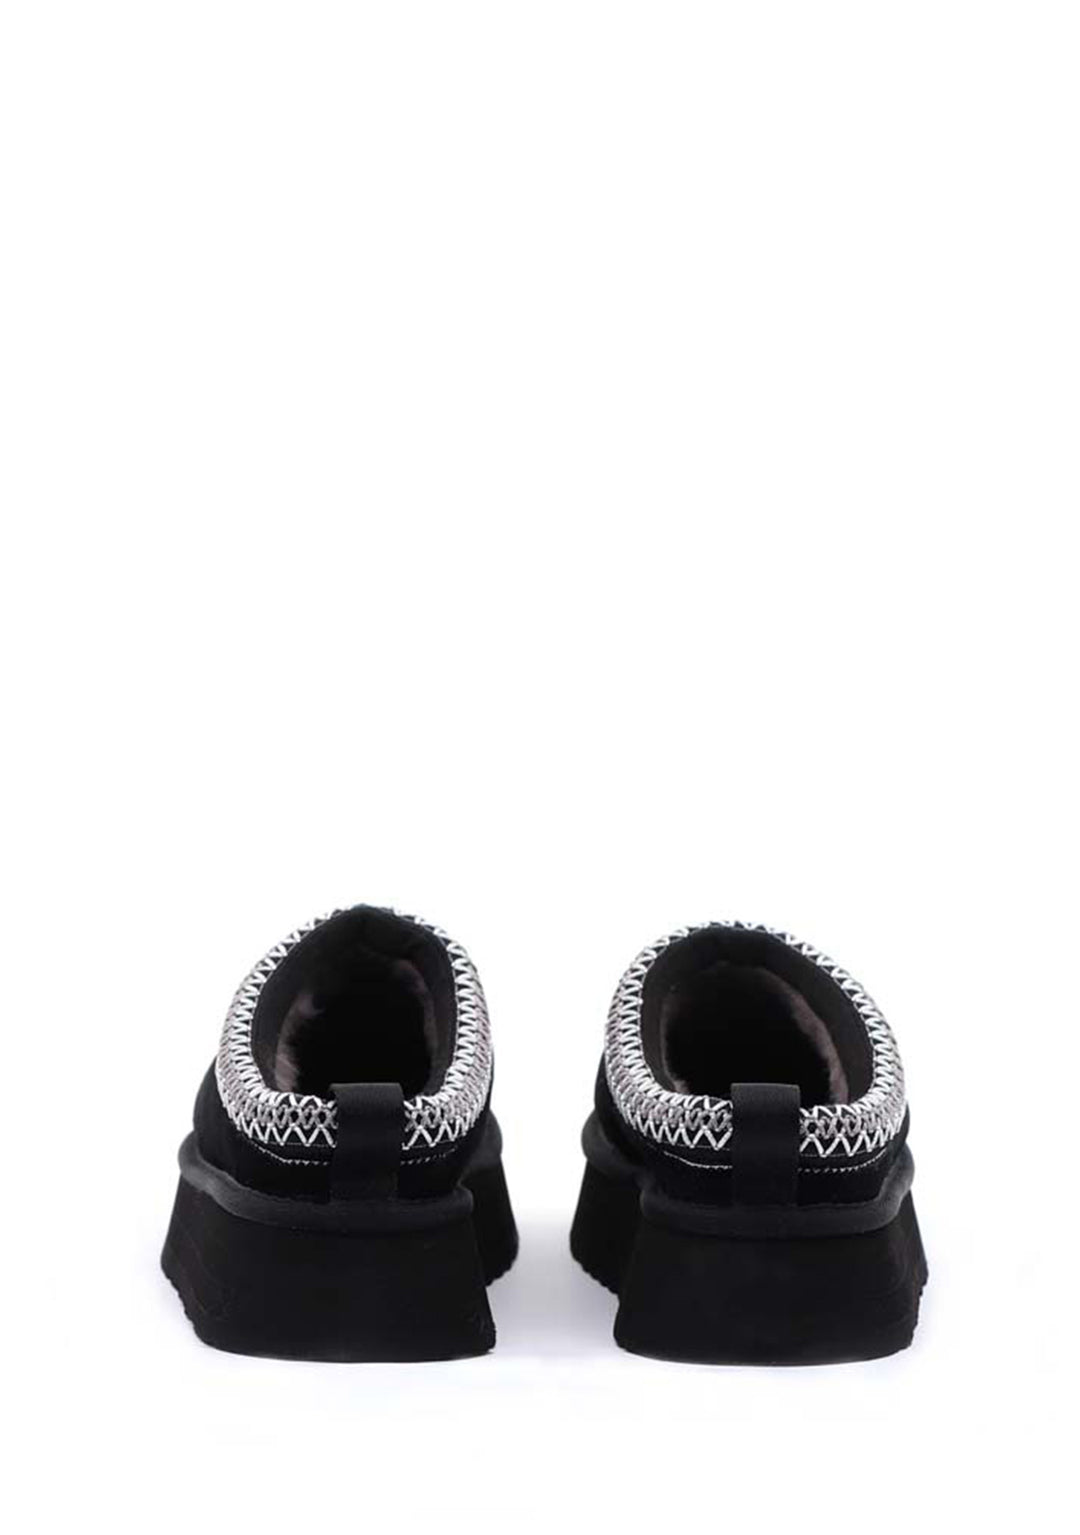 UGG - Black slipper